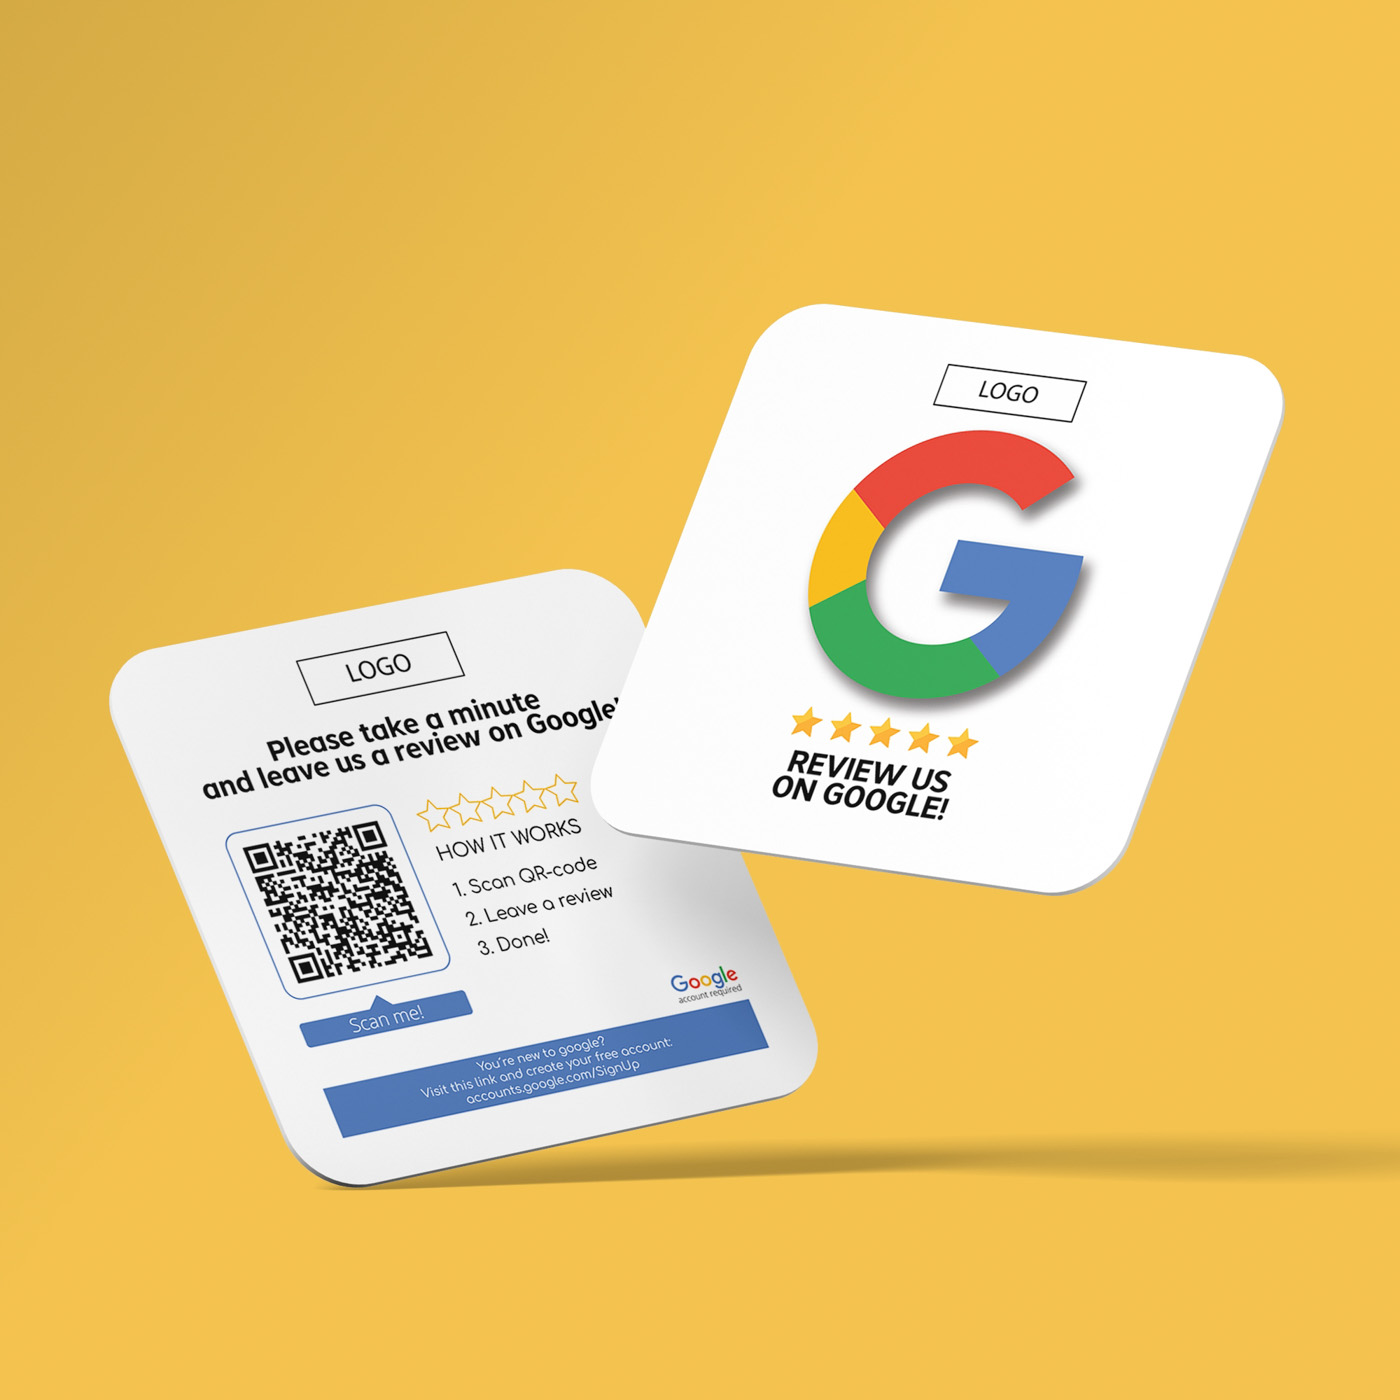 بطاقات جوجل بلاي